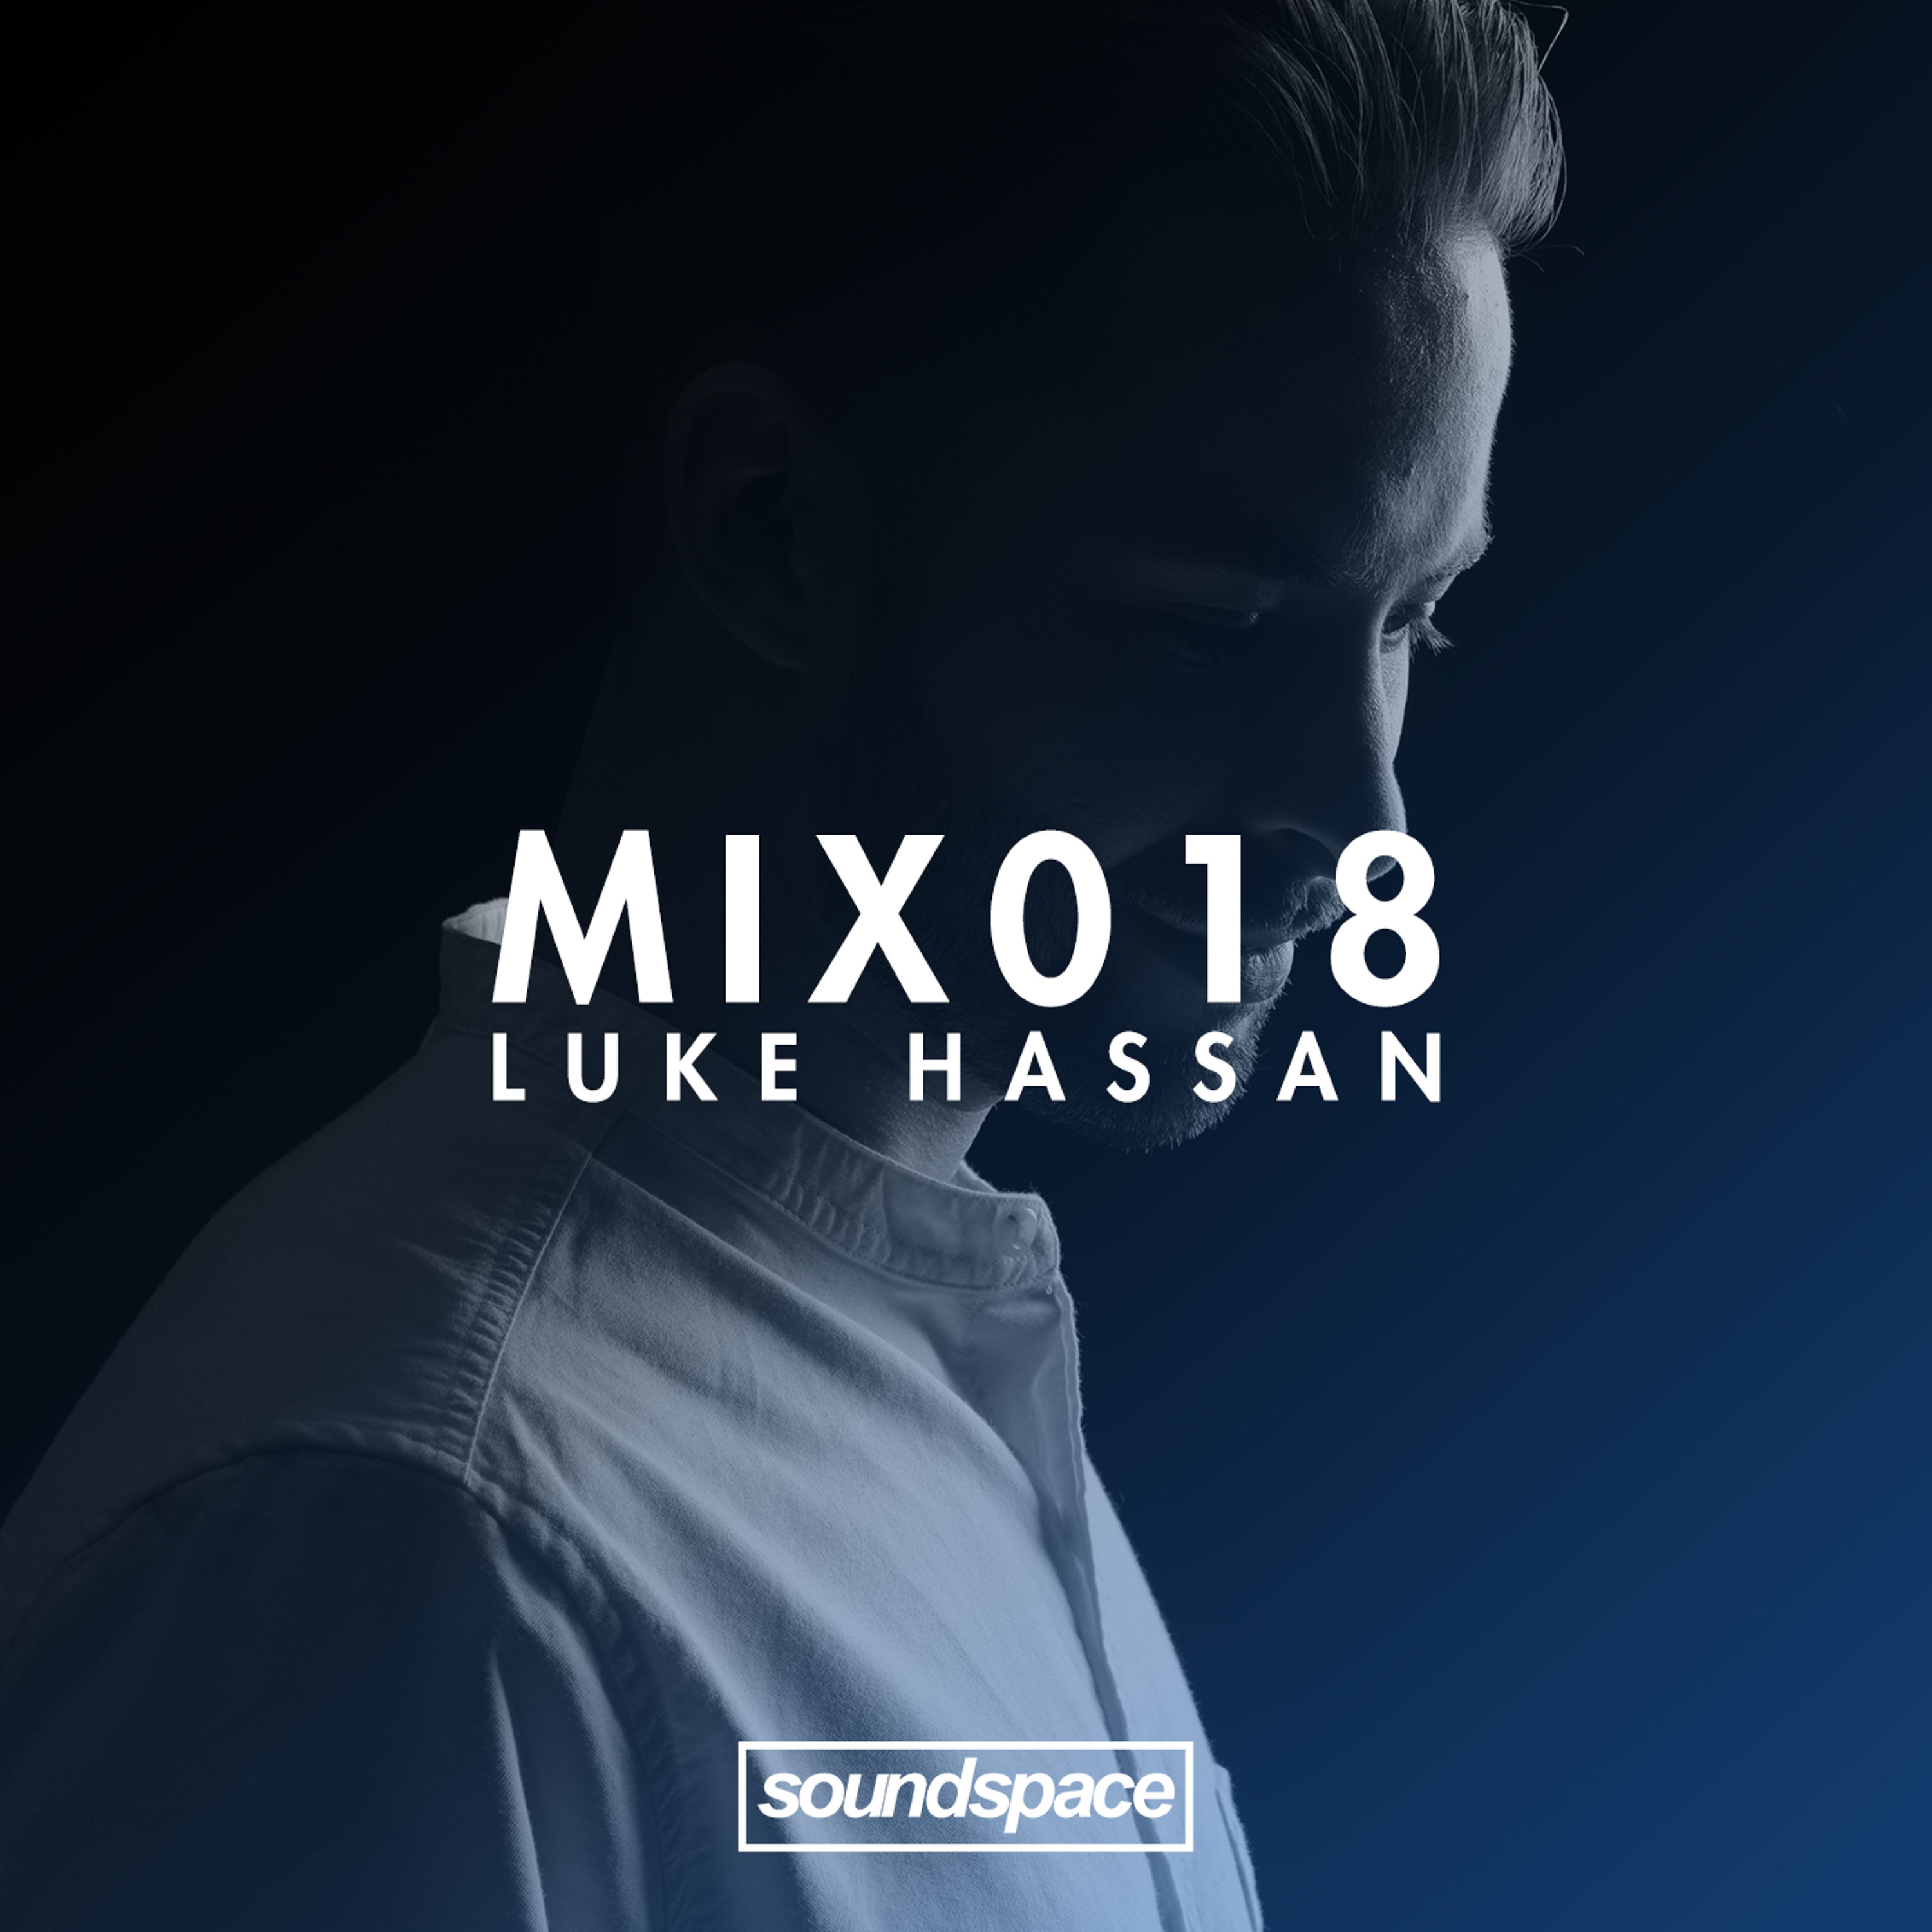 MIX018 - Luke Hassan